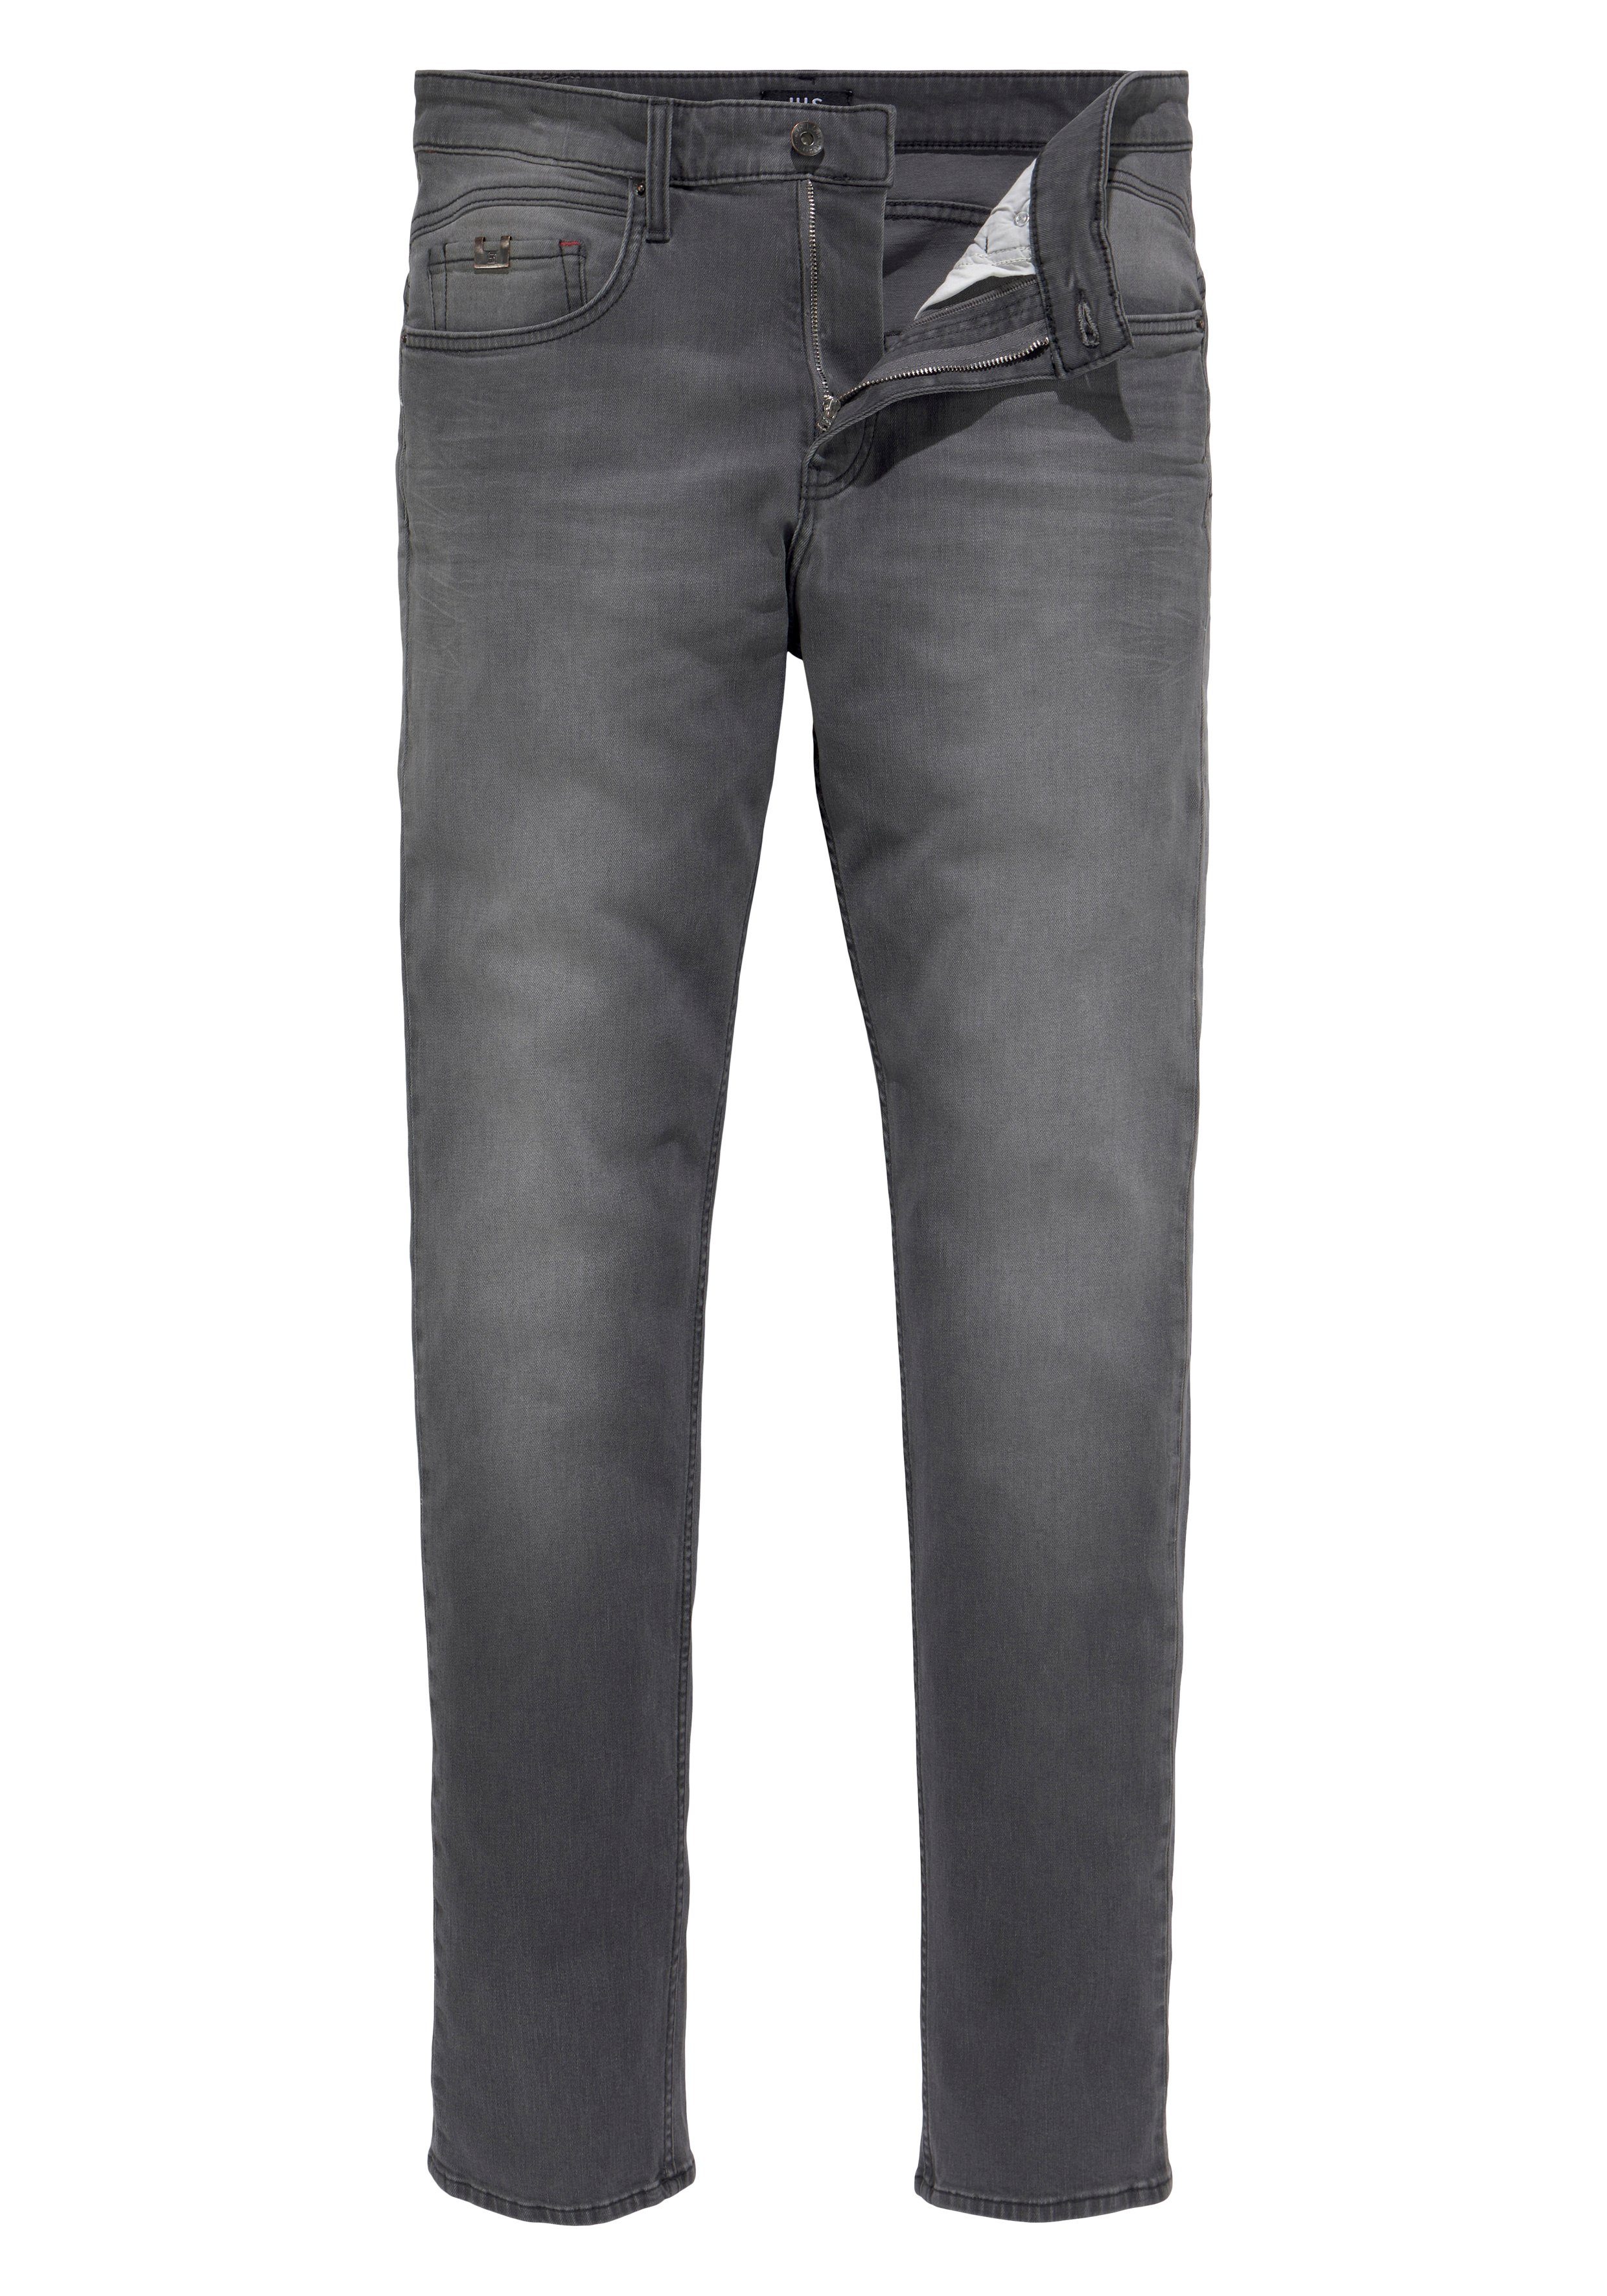 Ökologische, Ozon Tapered-fit-Jeans wassersparende H.I.S grey CIAN dark Wash durch Produktion